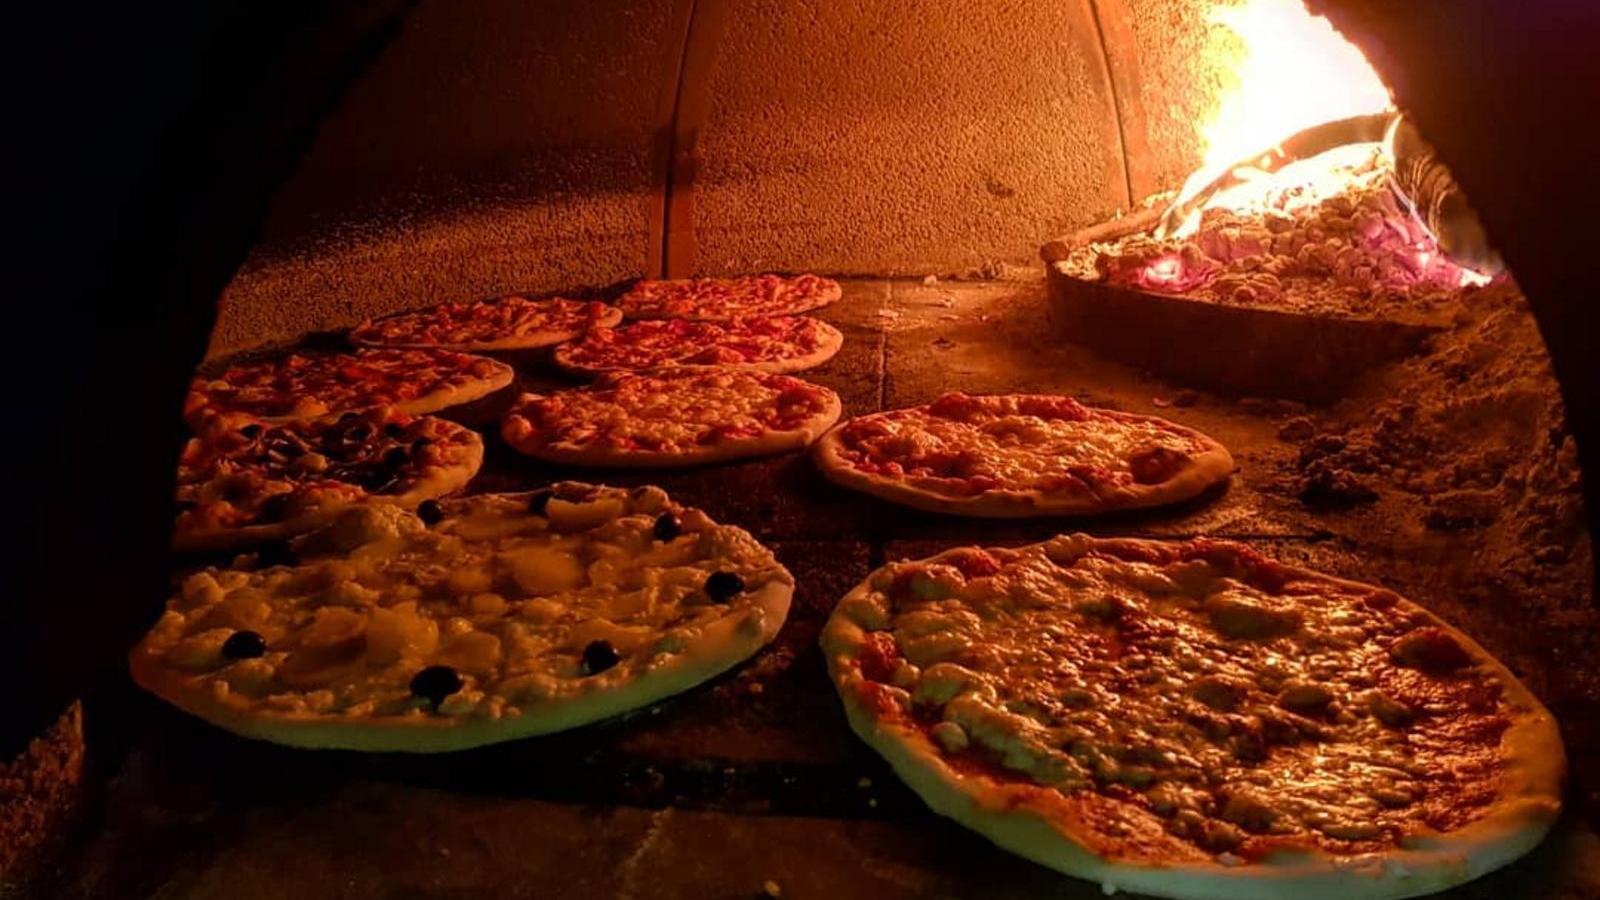 Pizzeria con forno a legna a San Nicandro - Pizzeria Trattoria Portofino | Localtourism.it